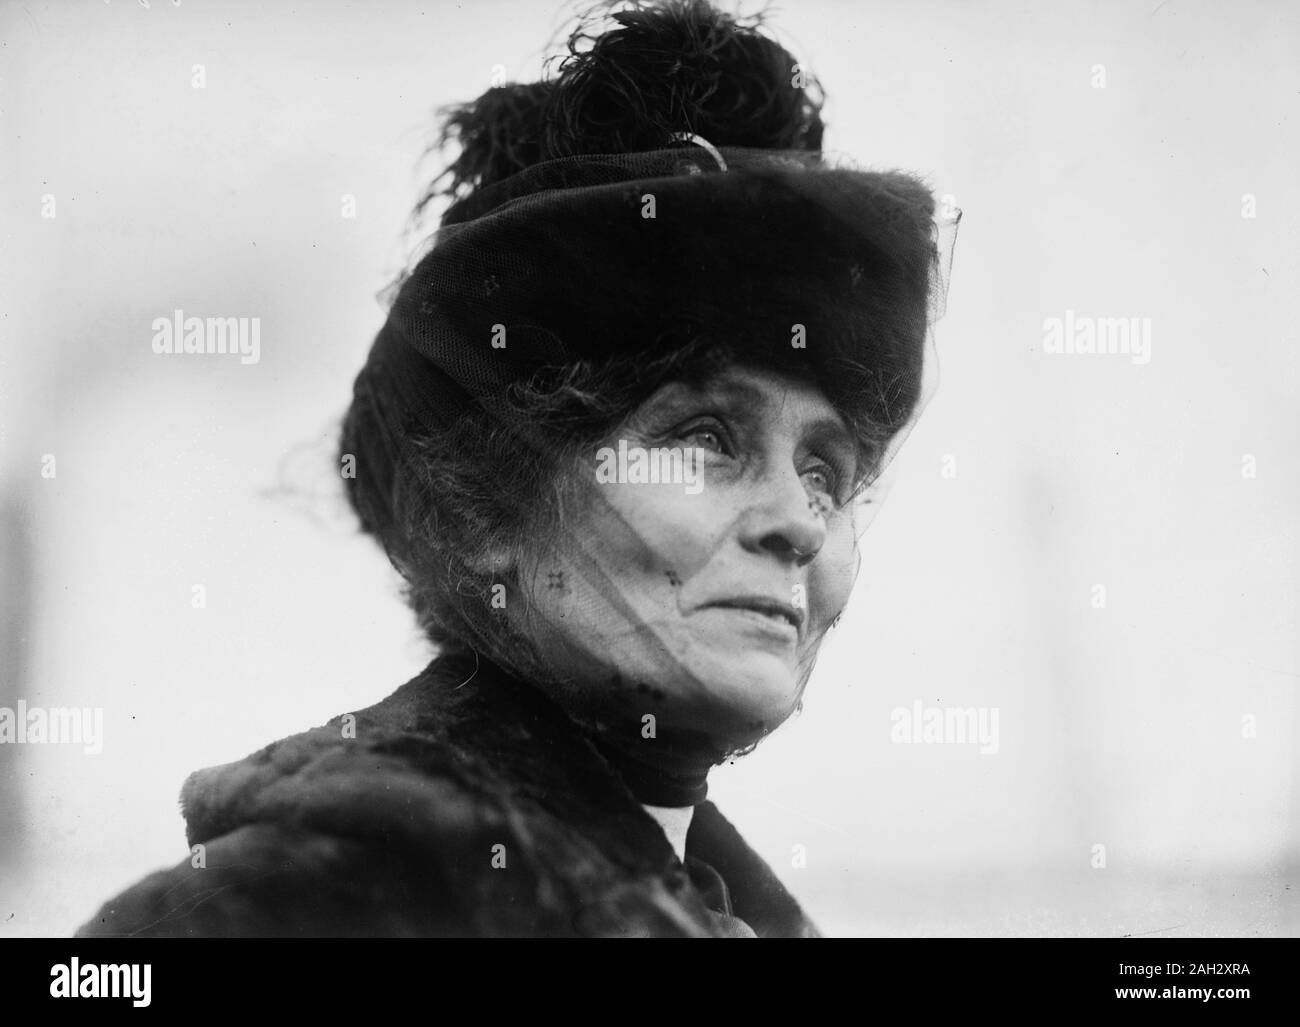 Mrs emmeline pankhurst Black and White Stock Photos & Images - Alamy